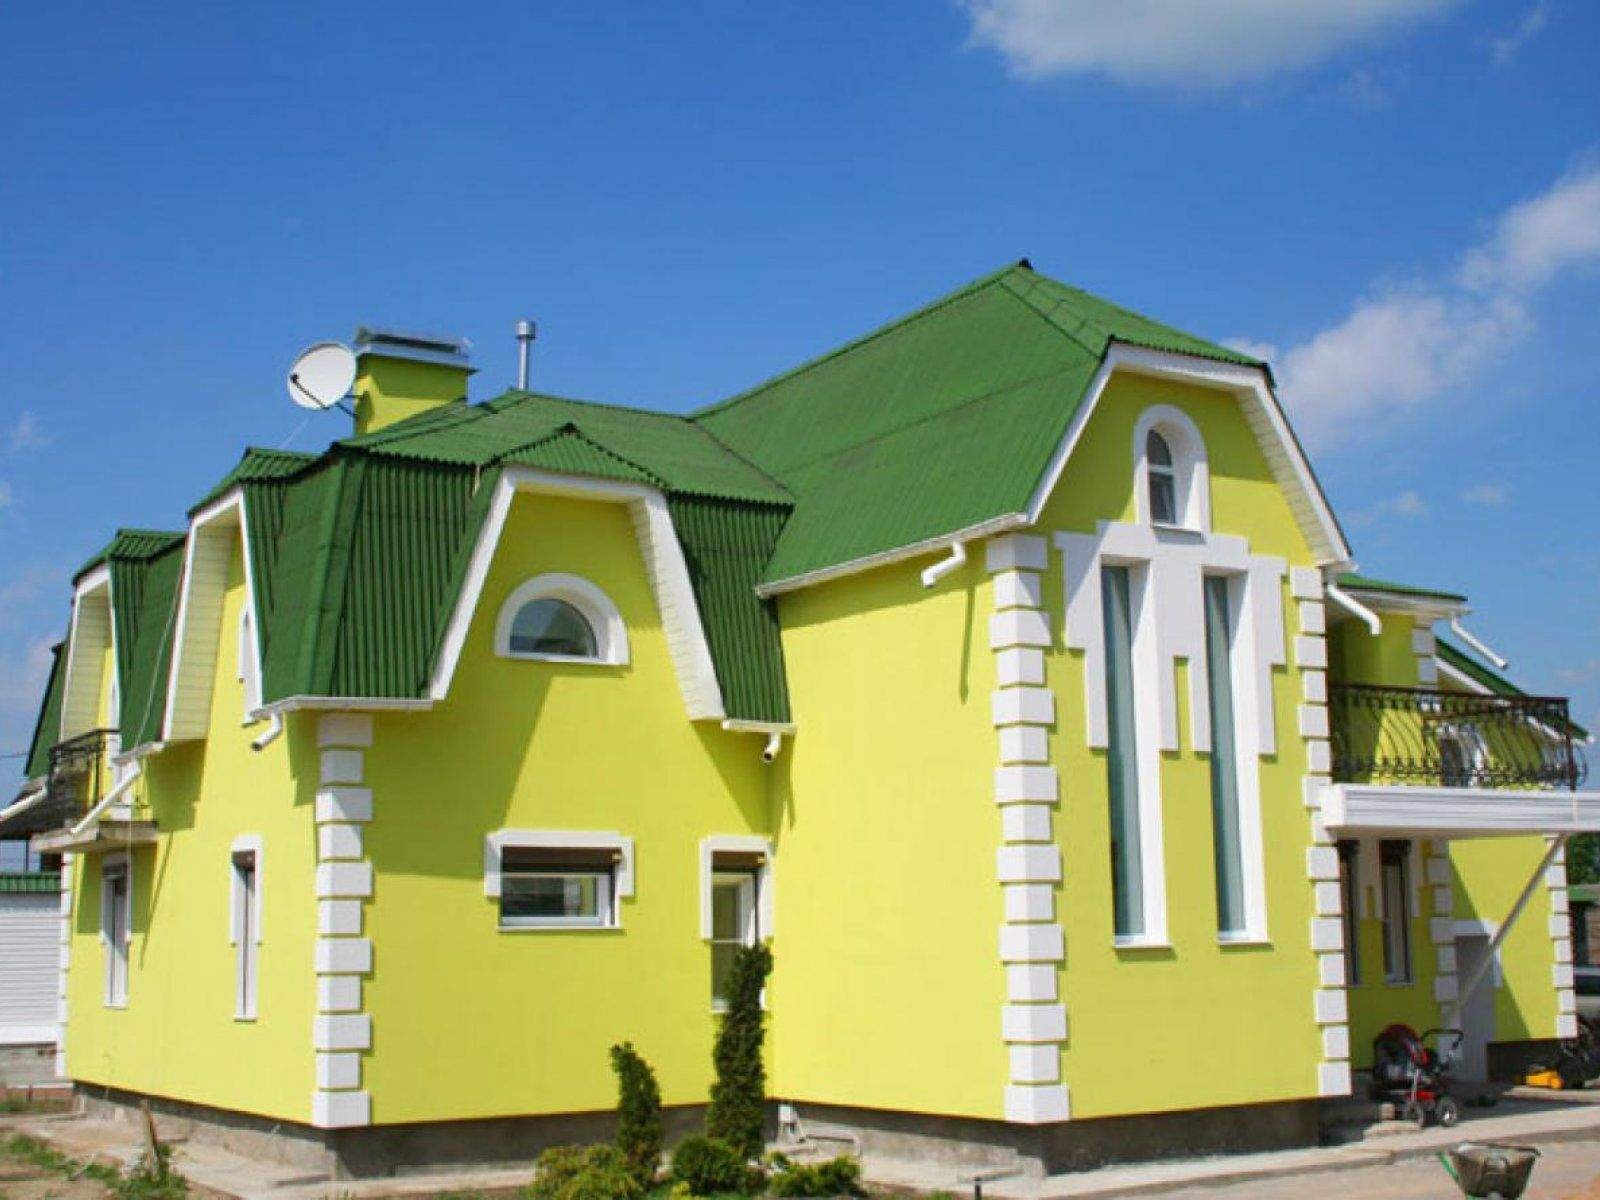 Наружная покраска домов. Окраска фасада. Покраска фасада дома. Расцветки фасадов домов. Желтый дом с зеленой крышей.